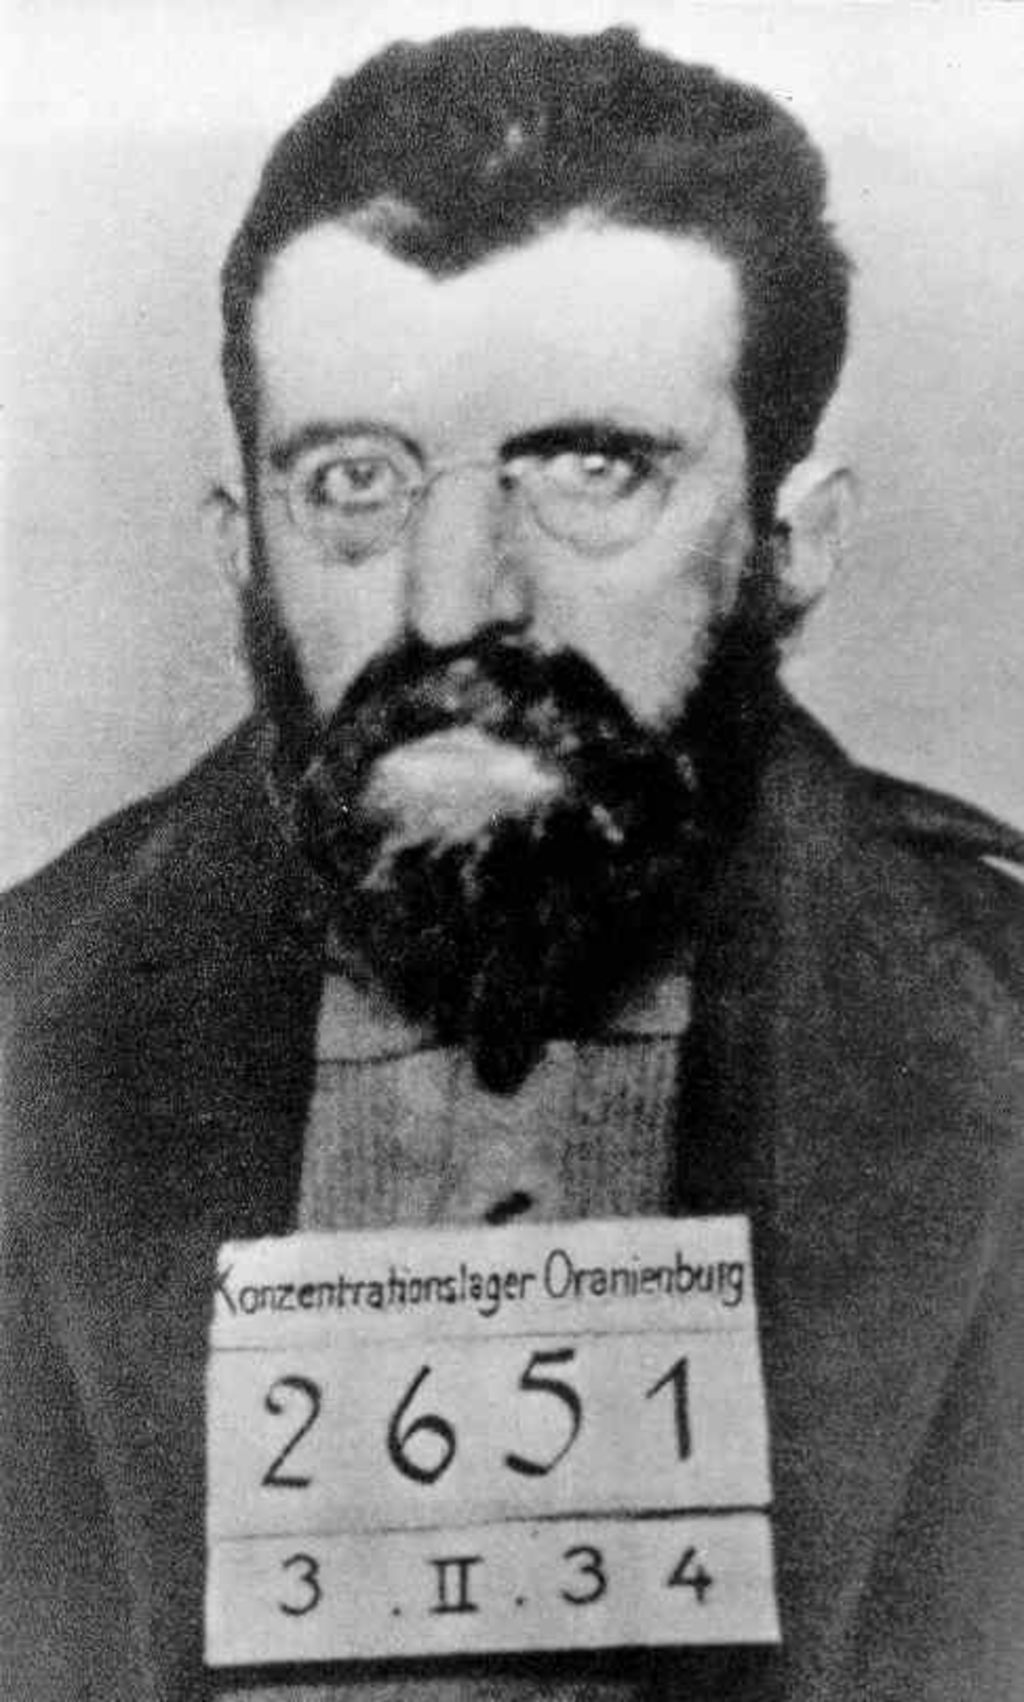 Foto: Erich Mühsam als Häftling im KZ Oranienburg, 1934